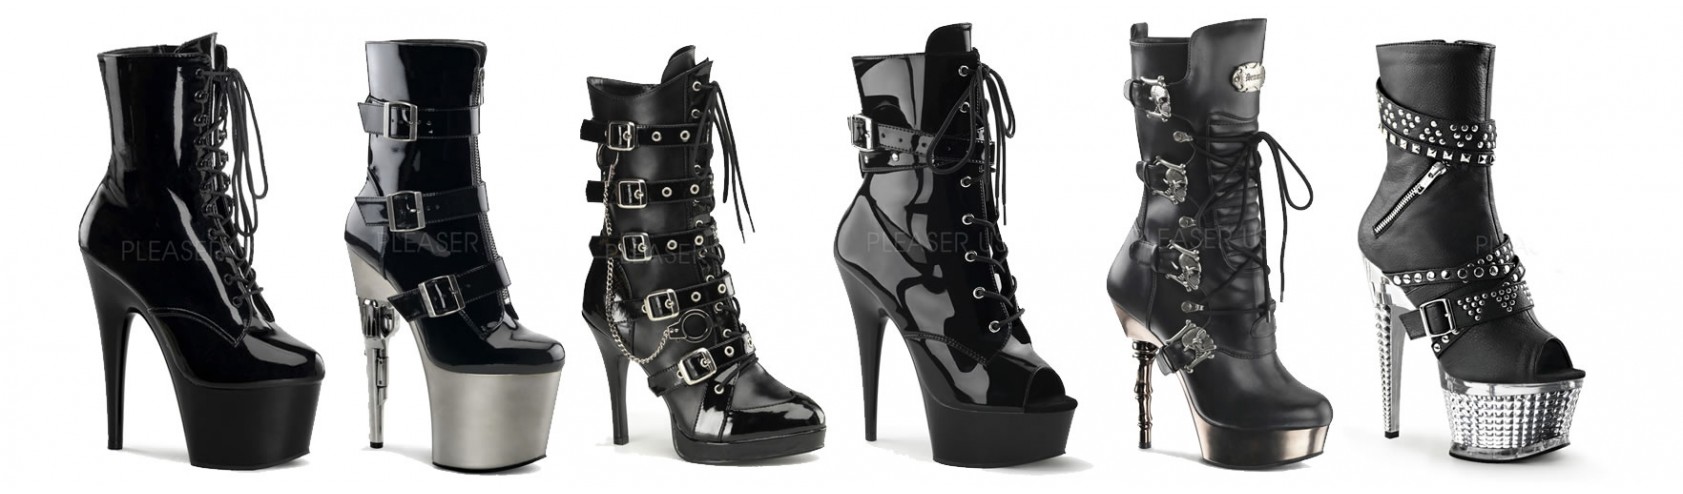 Size 10 spiked leopard short boot heels. | Short heel boots, Leopard  shorts, Leather heeled boots